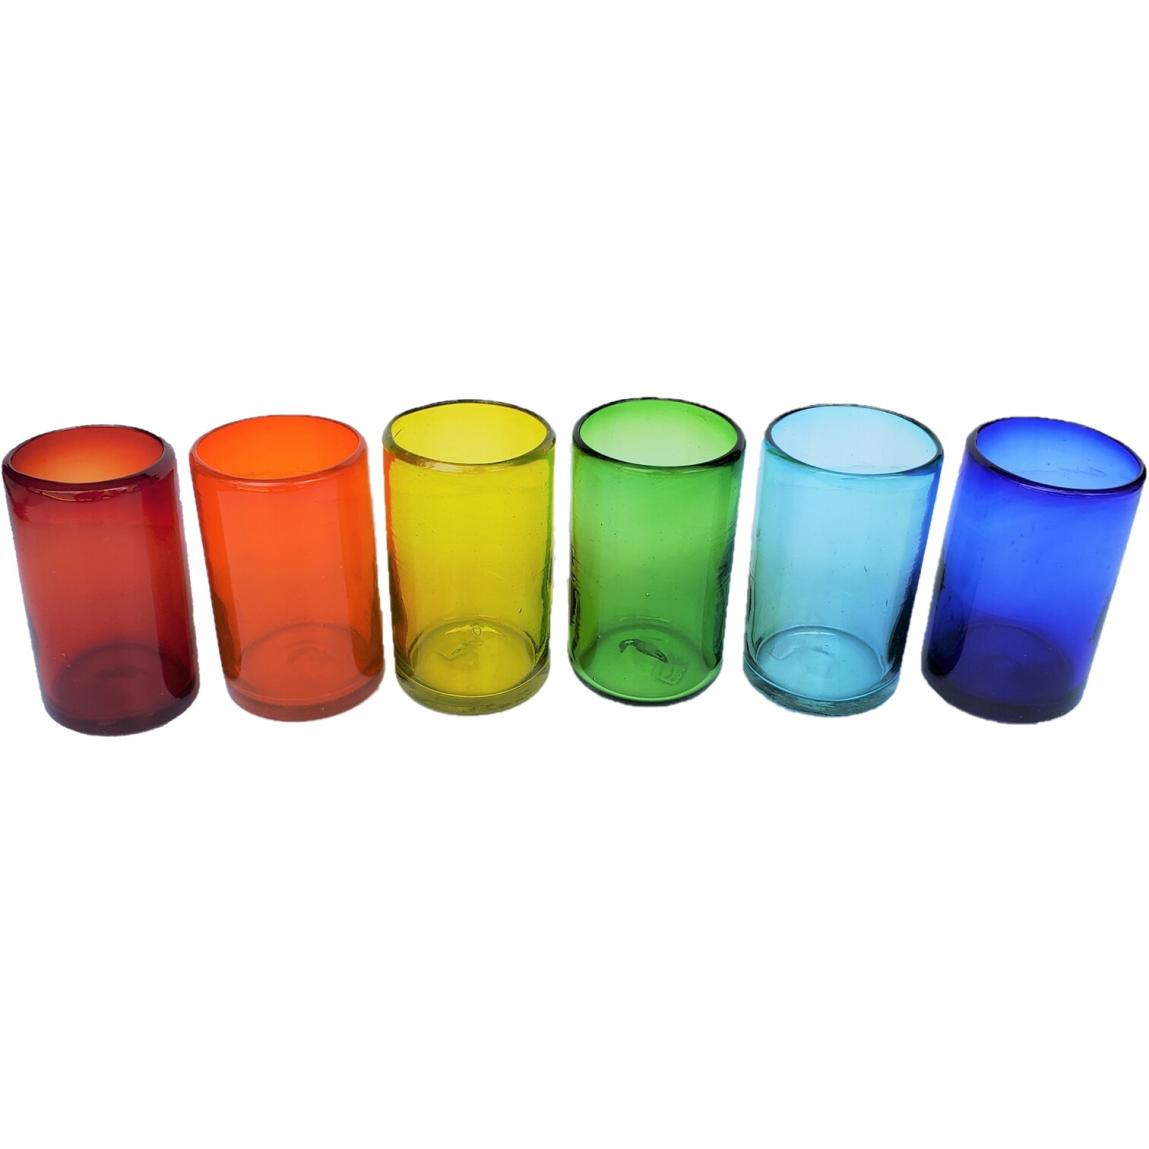 Ofertas / Juego de 6 vasos grandes de colores Arcoris / stos artesanales vasos le darn un toque clsico a su bebida favorita.